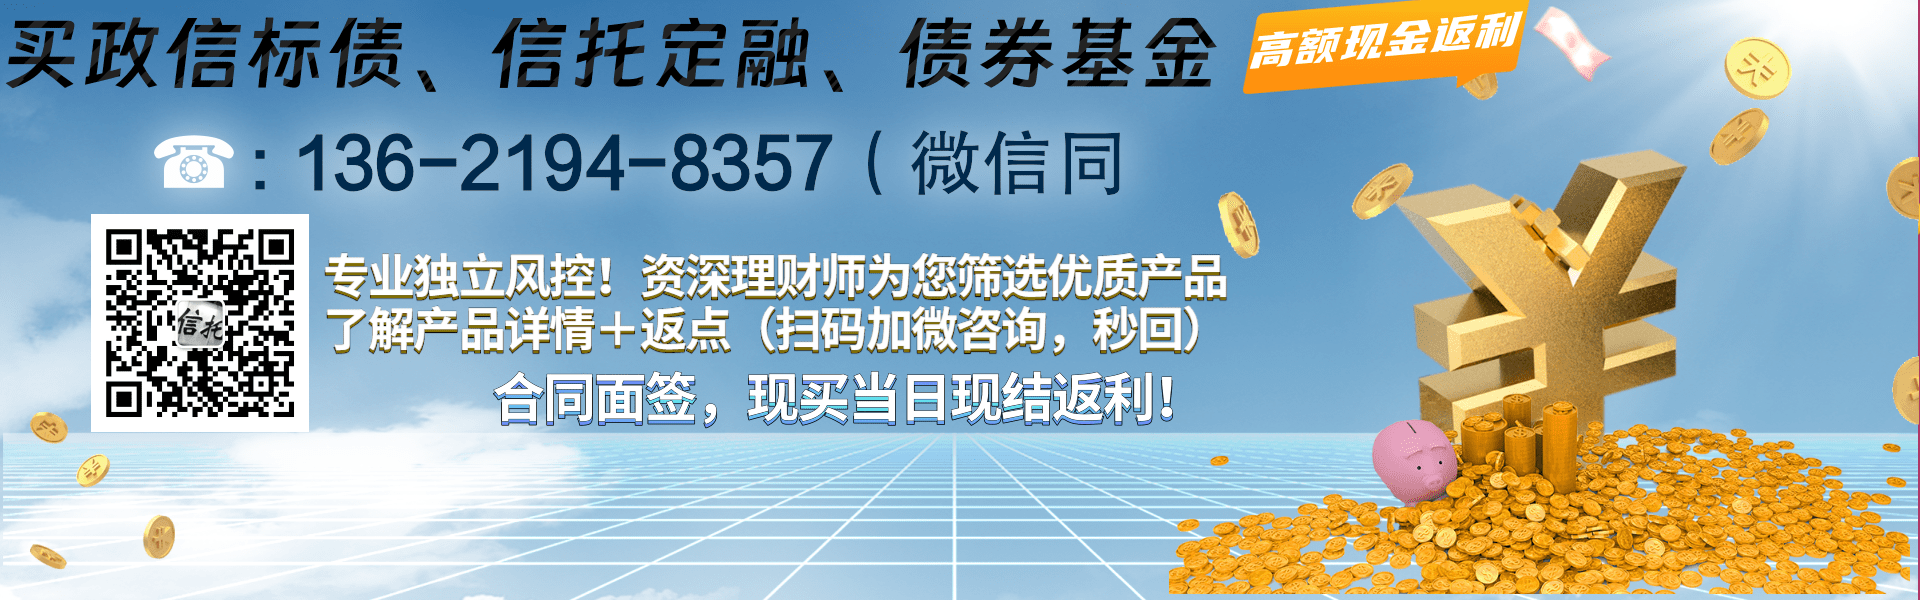 央企信托—211号潍坊滨海旅游集合信托计划